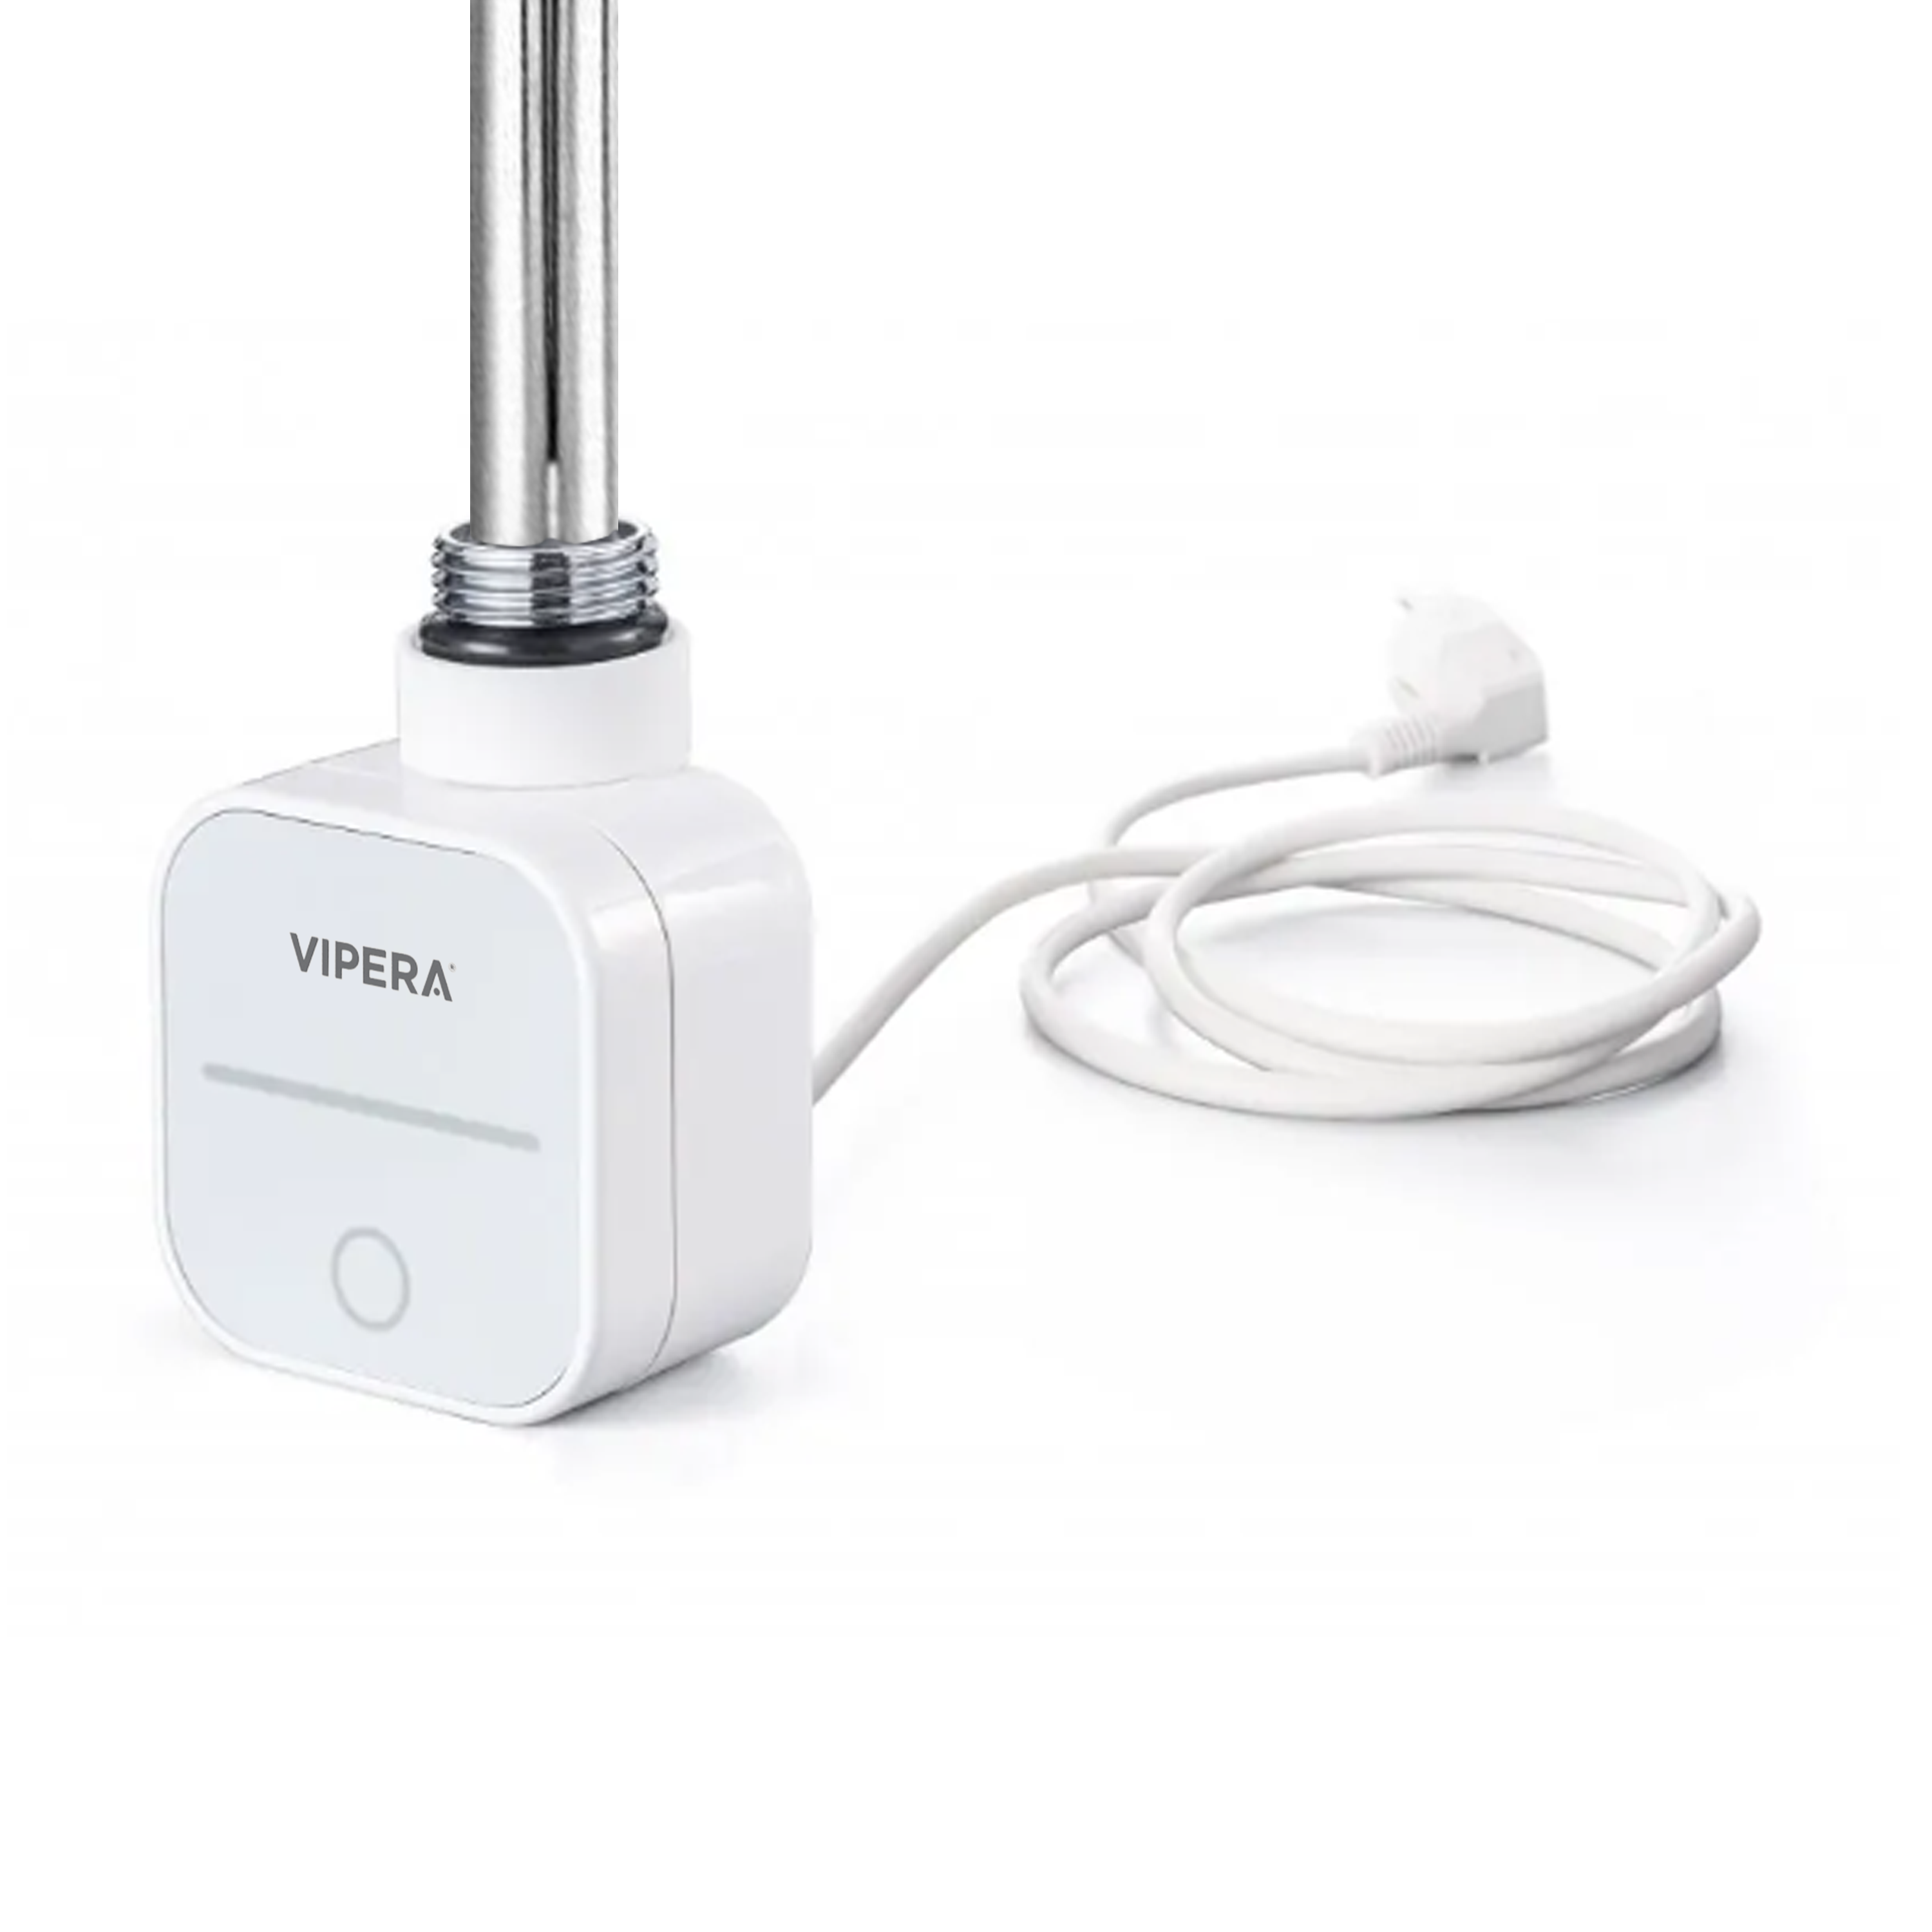 Vipera radiator thermostaat voor elektrische handdoekradiator 500W programmeerbaar wit